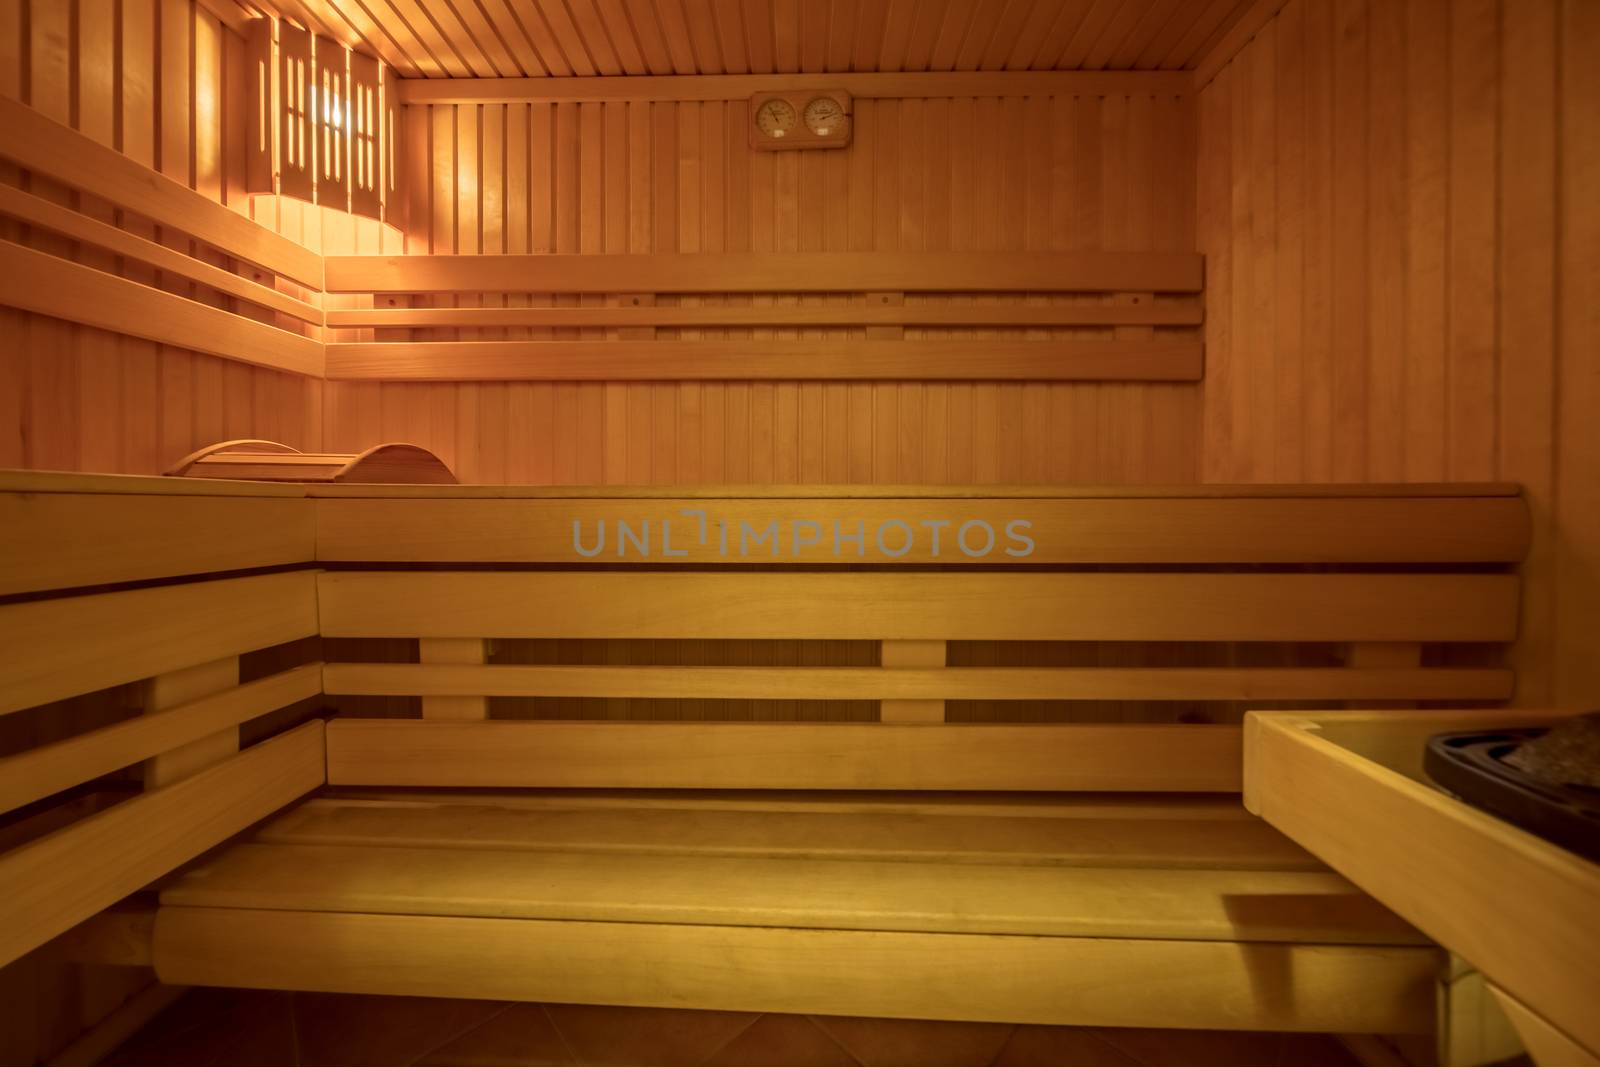 Sauna room interior by olga_sweet